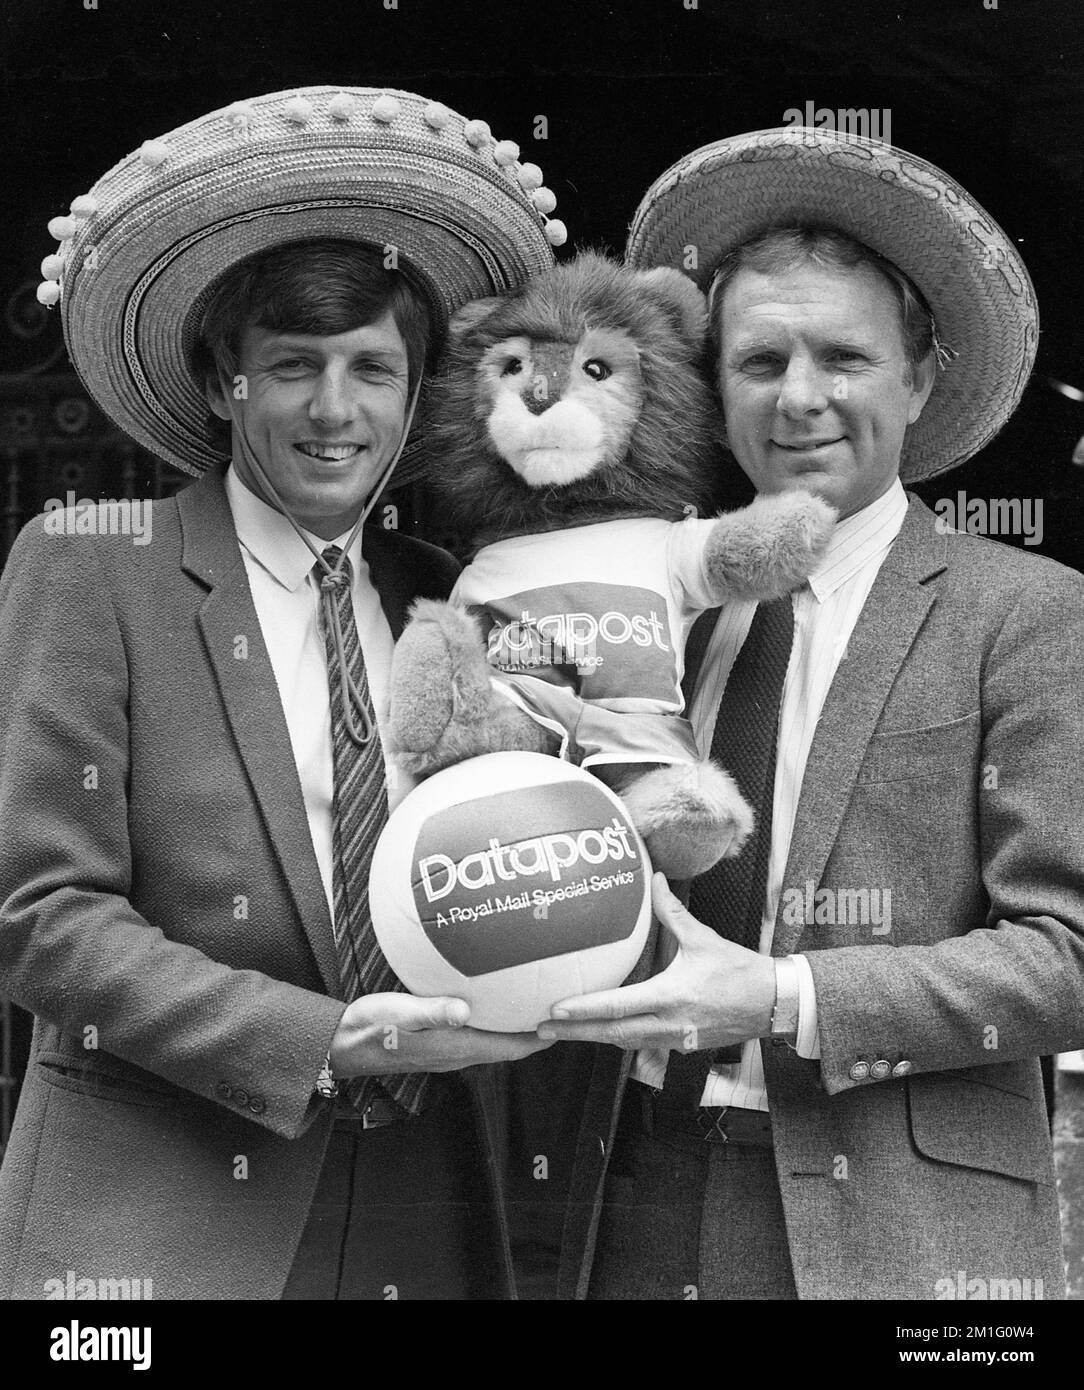 Martin Peters und Bobby Moore, Gewinner der englischen Fußball-Weltmeisterschaft 1982, mit dem Maskottchen Willie Stockfoto